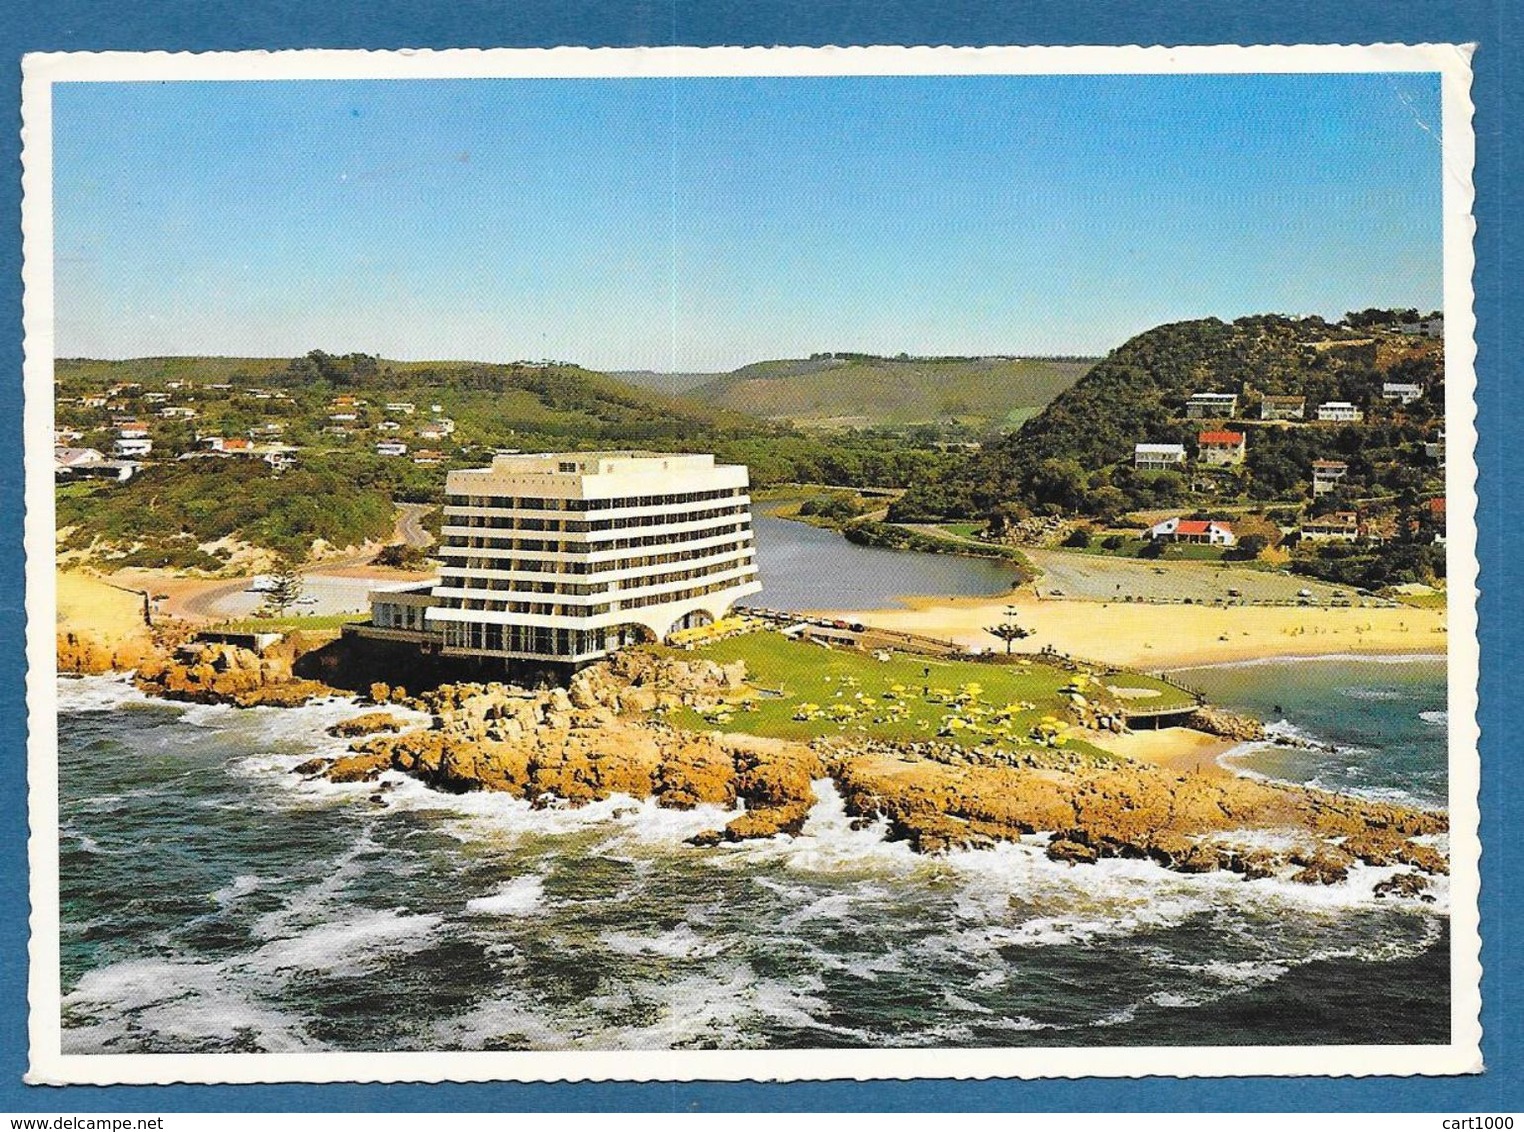 SOUTH AFRIKA PLETTENBERG BAY CAPE PROVINCE 1979 - Sudáfrica